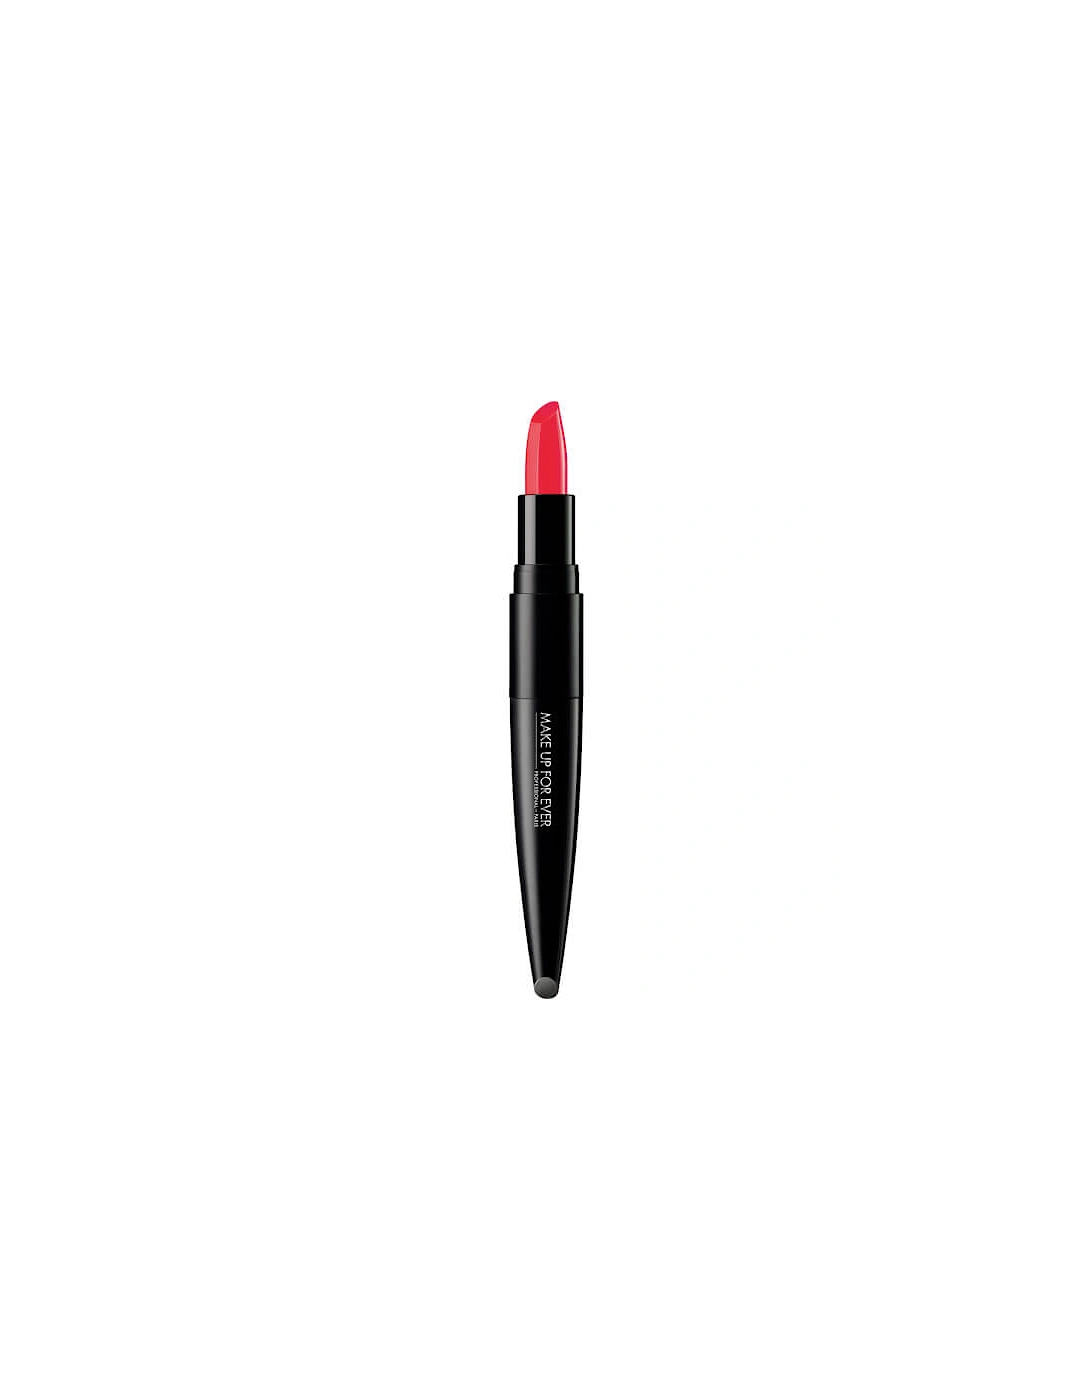 Rouge Artist Lipstick - 310-COOL PAPAYA, 2 of 1